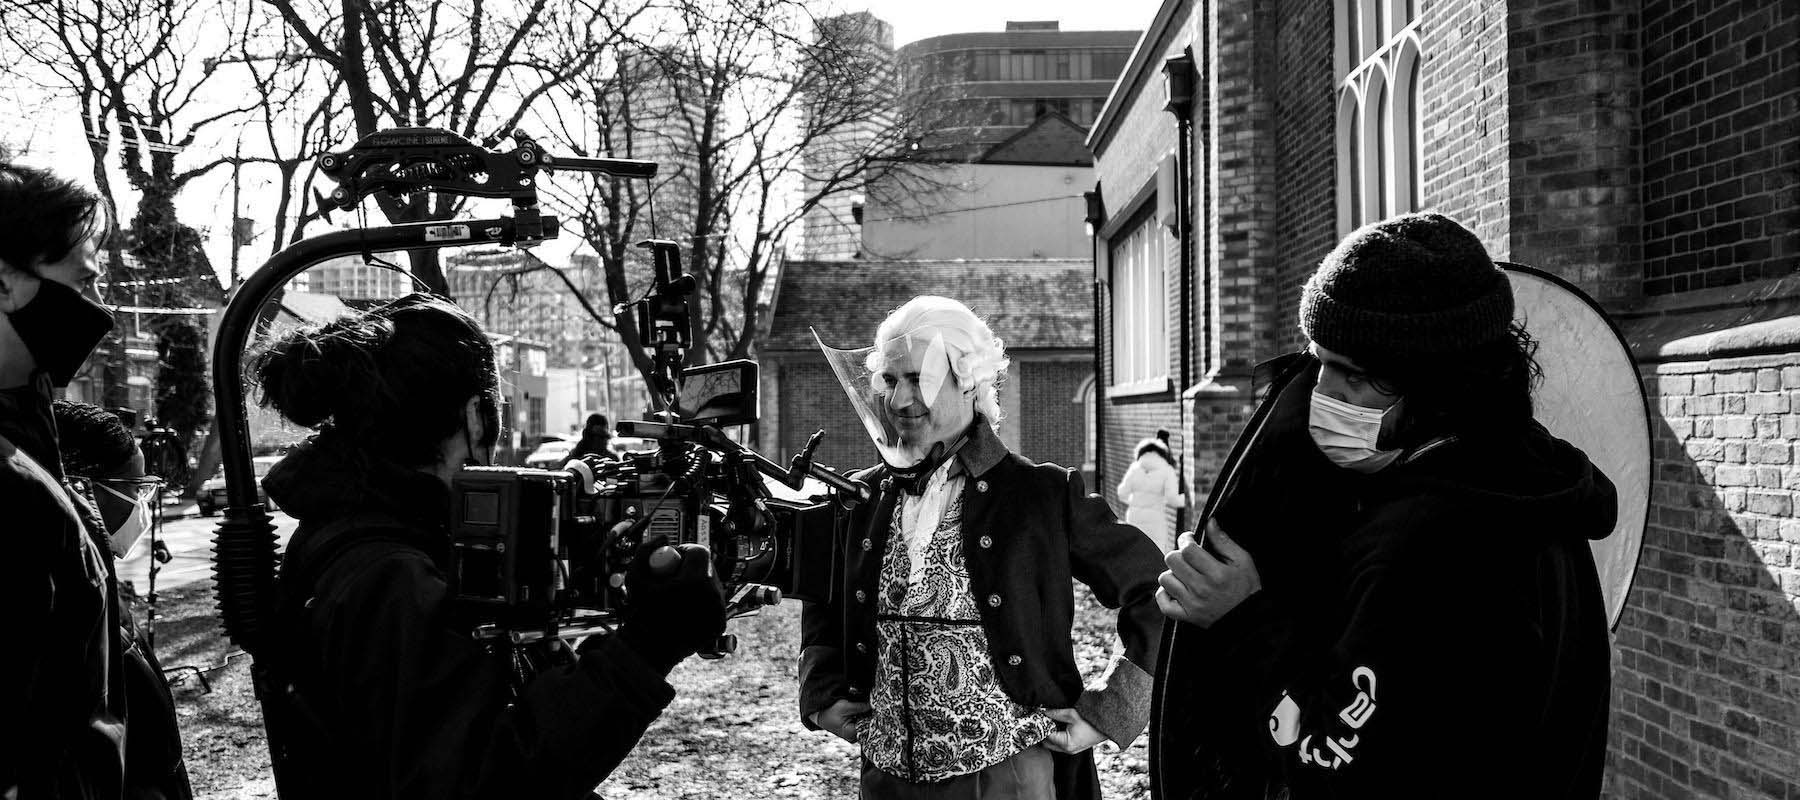 Behind the scenes during filming for Théâtre français de Toronto’s adaptation of Les Liaisons dangereuses. (Photo: Mathieu Taillardas) 